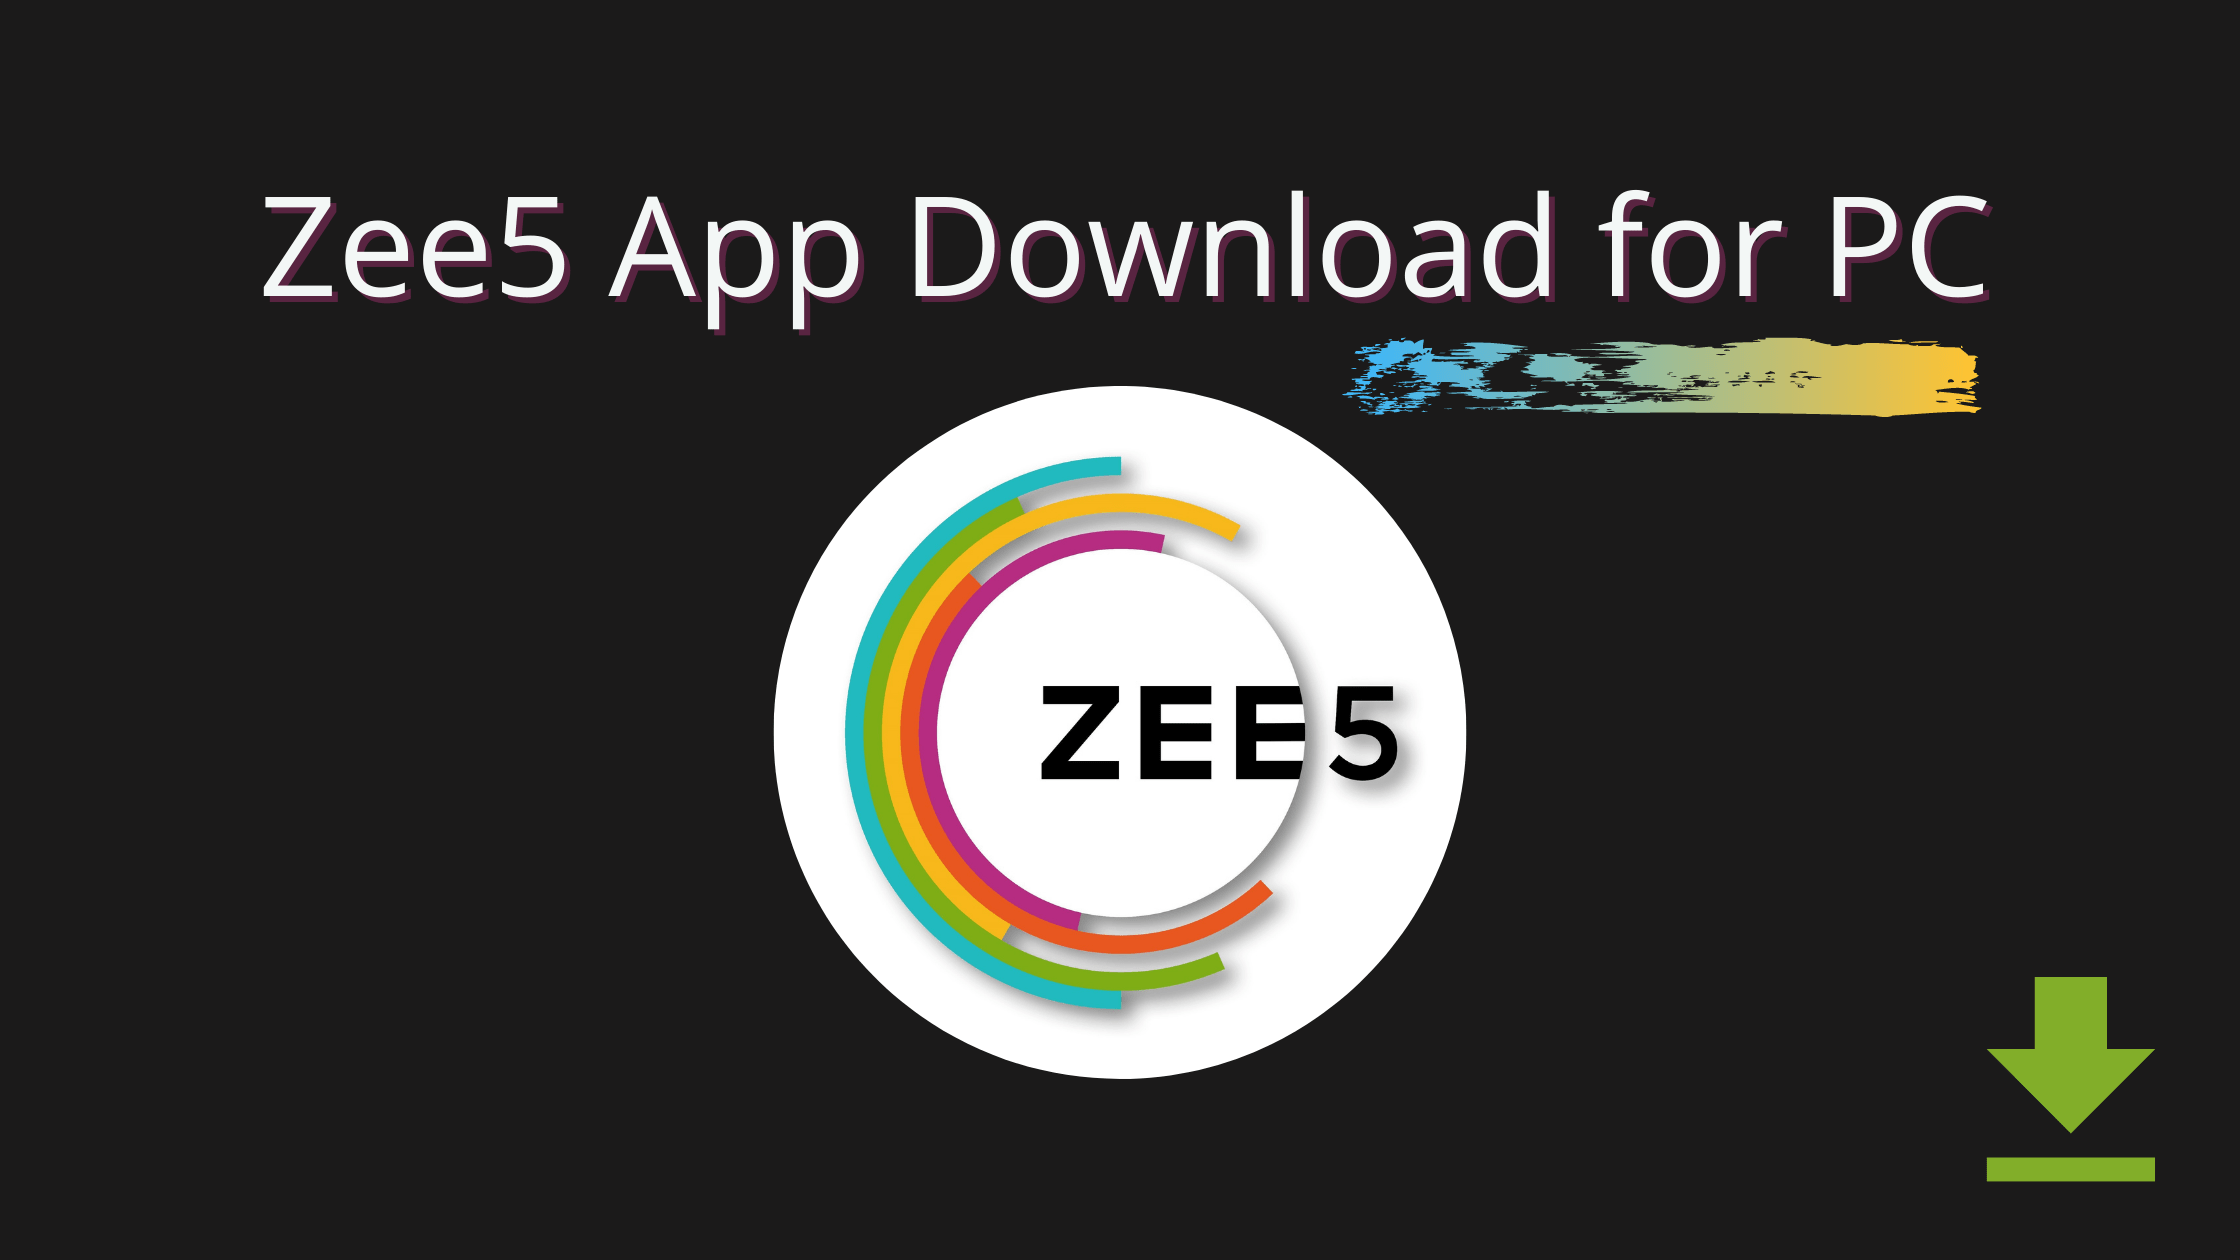 zee download app